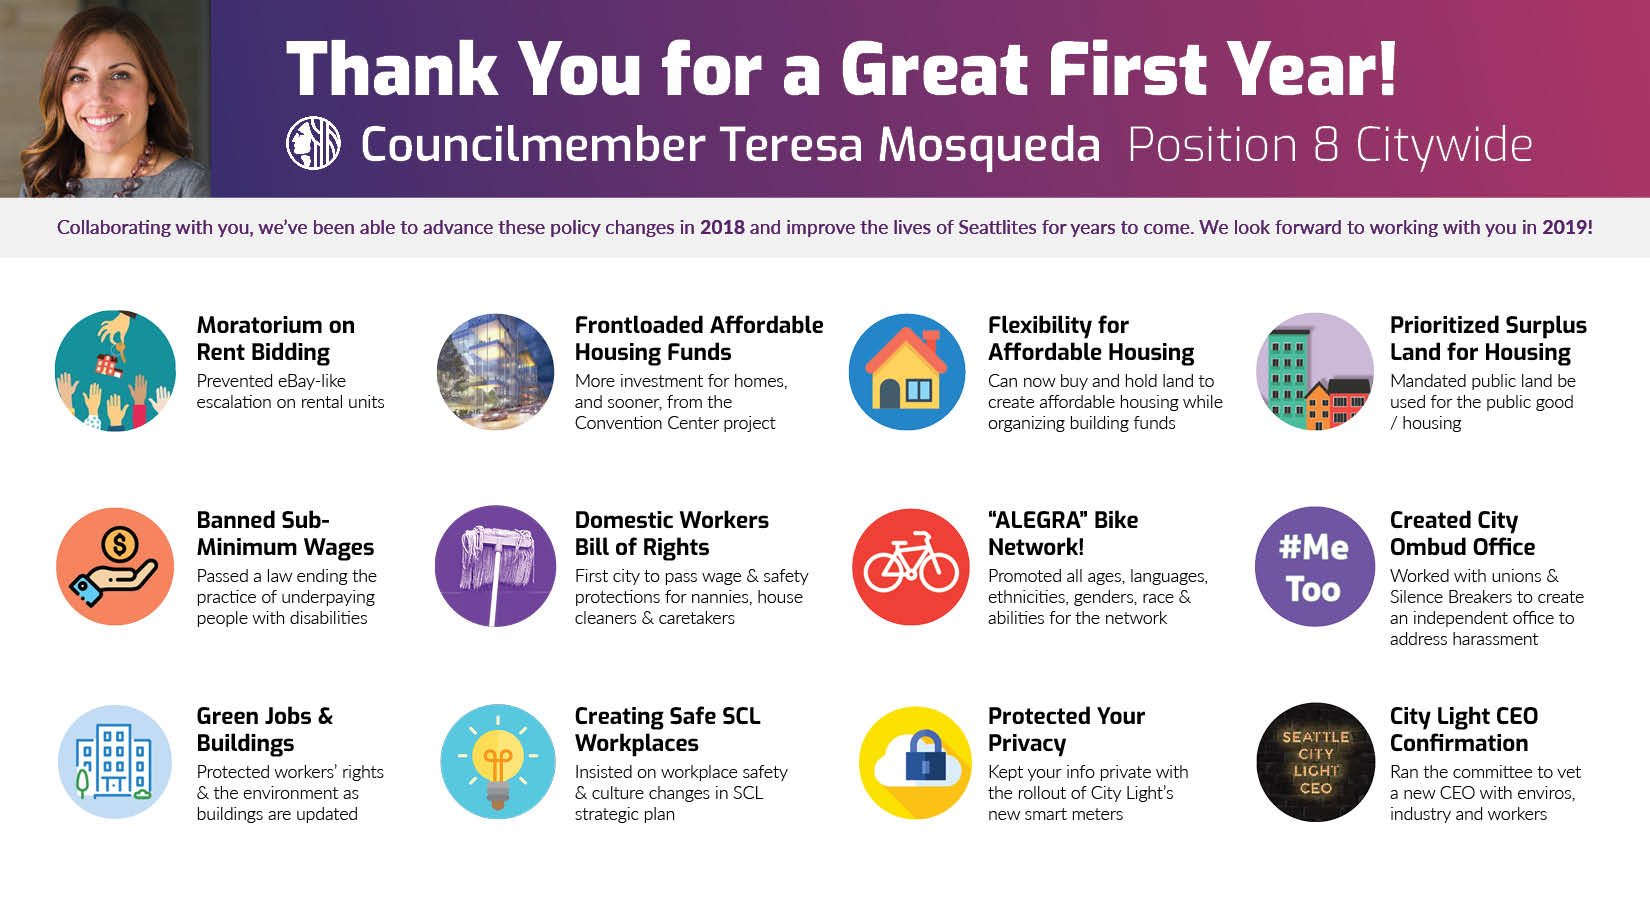 Councilmember Teresa Mosqueda's 2018 Accomplishments